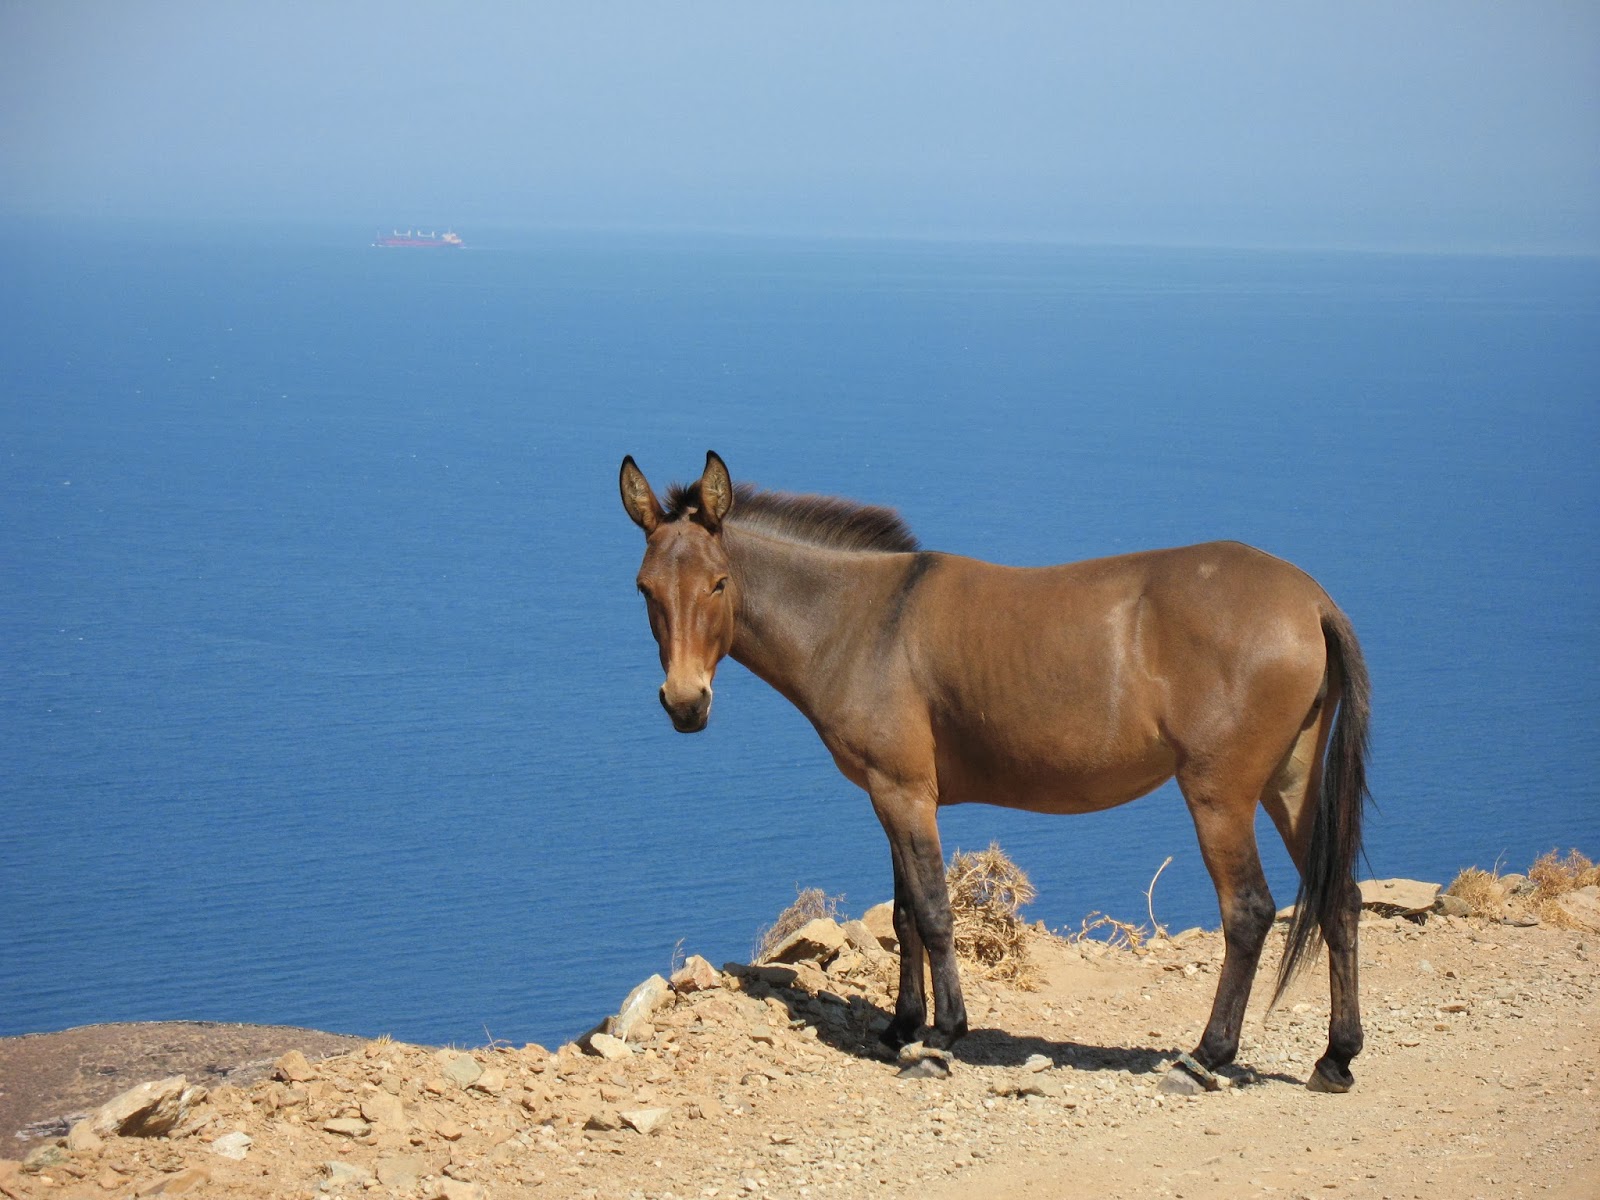 Donkey in Kea island Greece